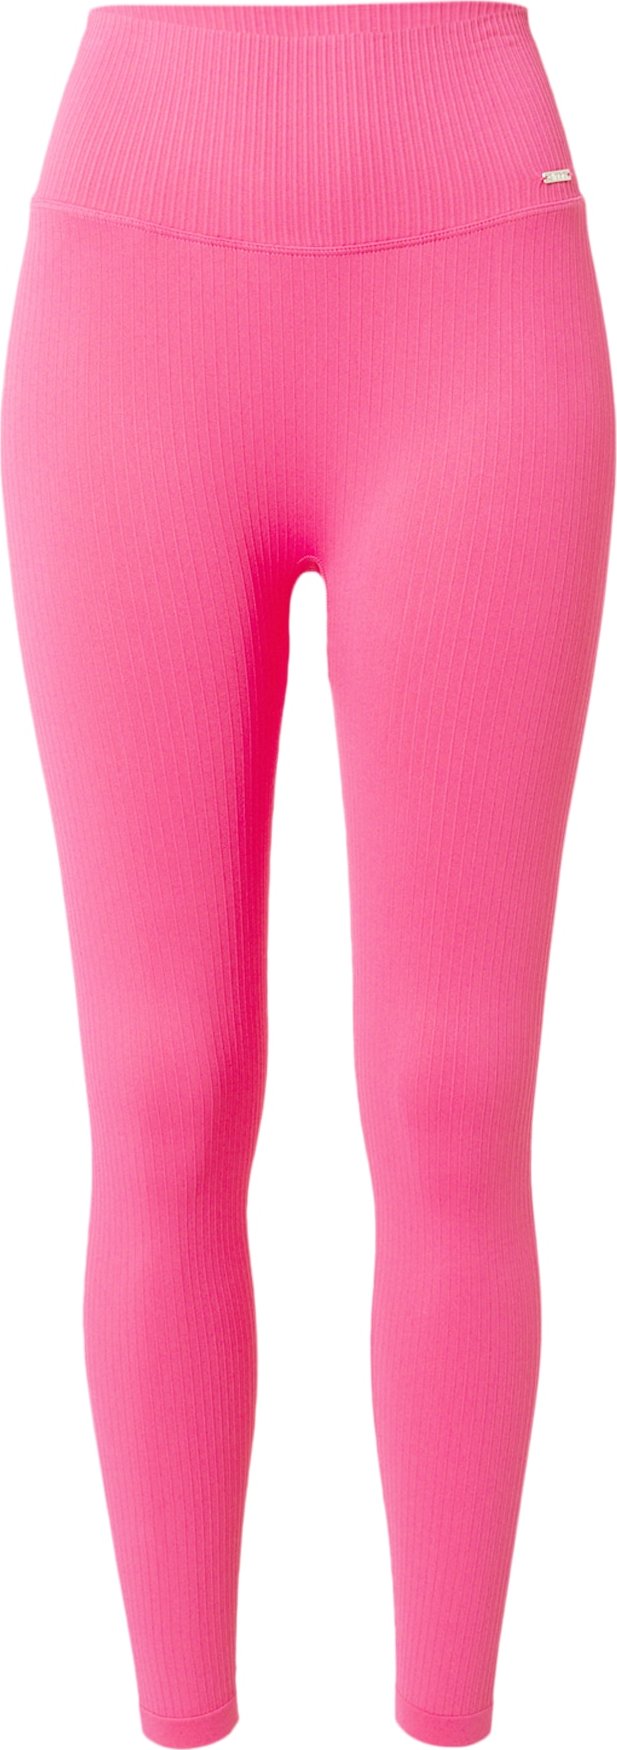 Sportovní kalhoty aim'n pink